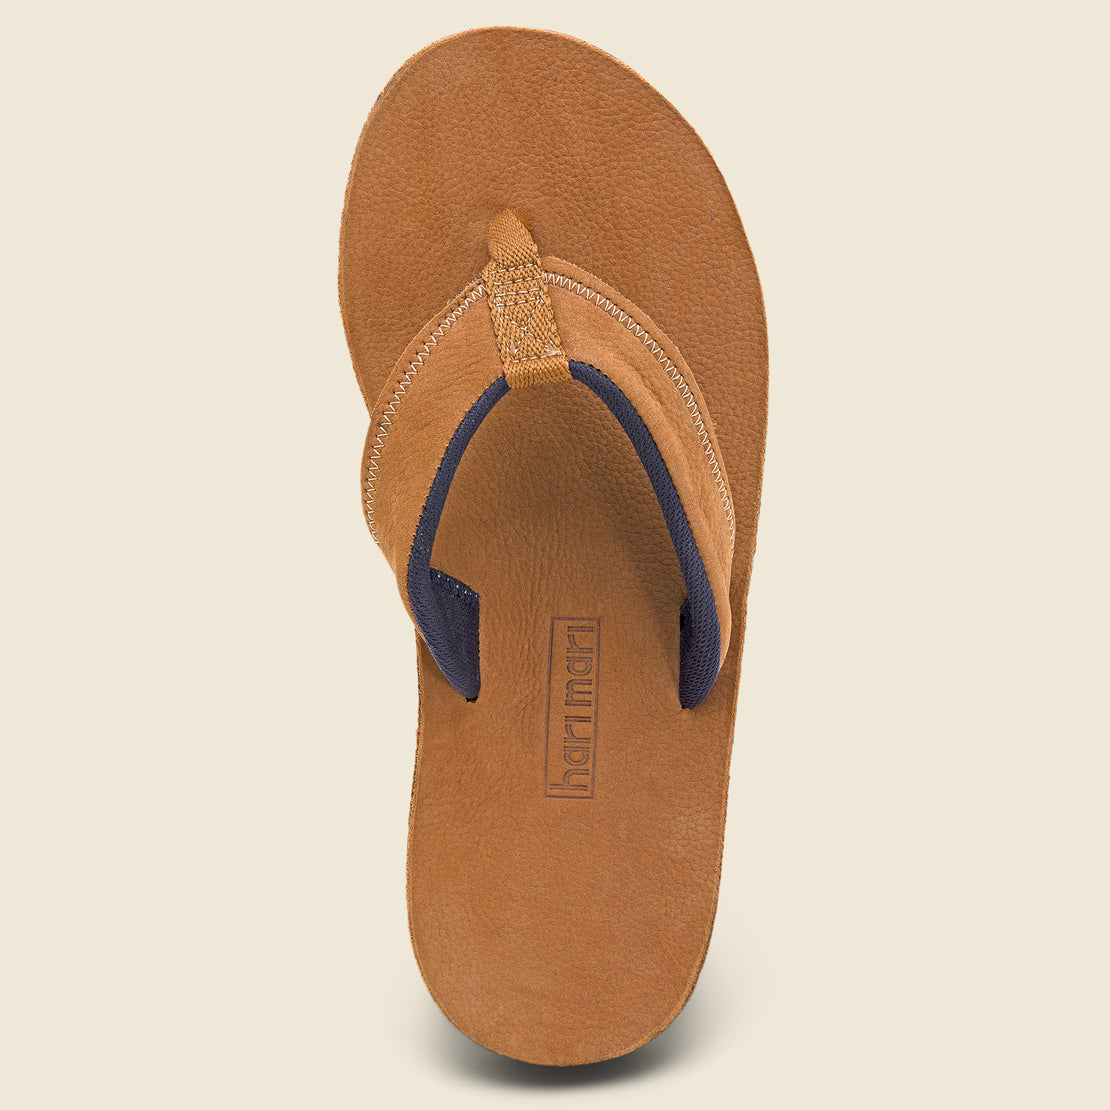 Pier Flip Flop - Tan - Hari Mari - STAG Provisions - Shoes - Sandals / Flops